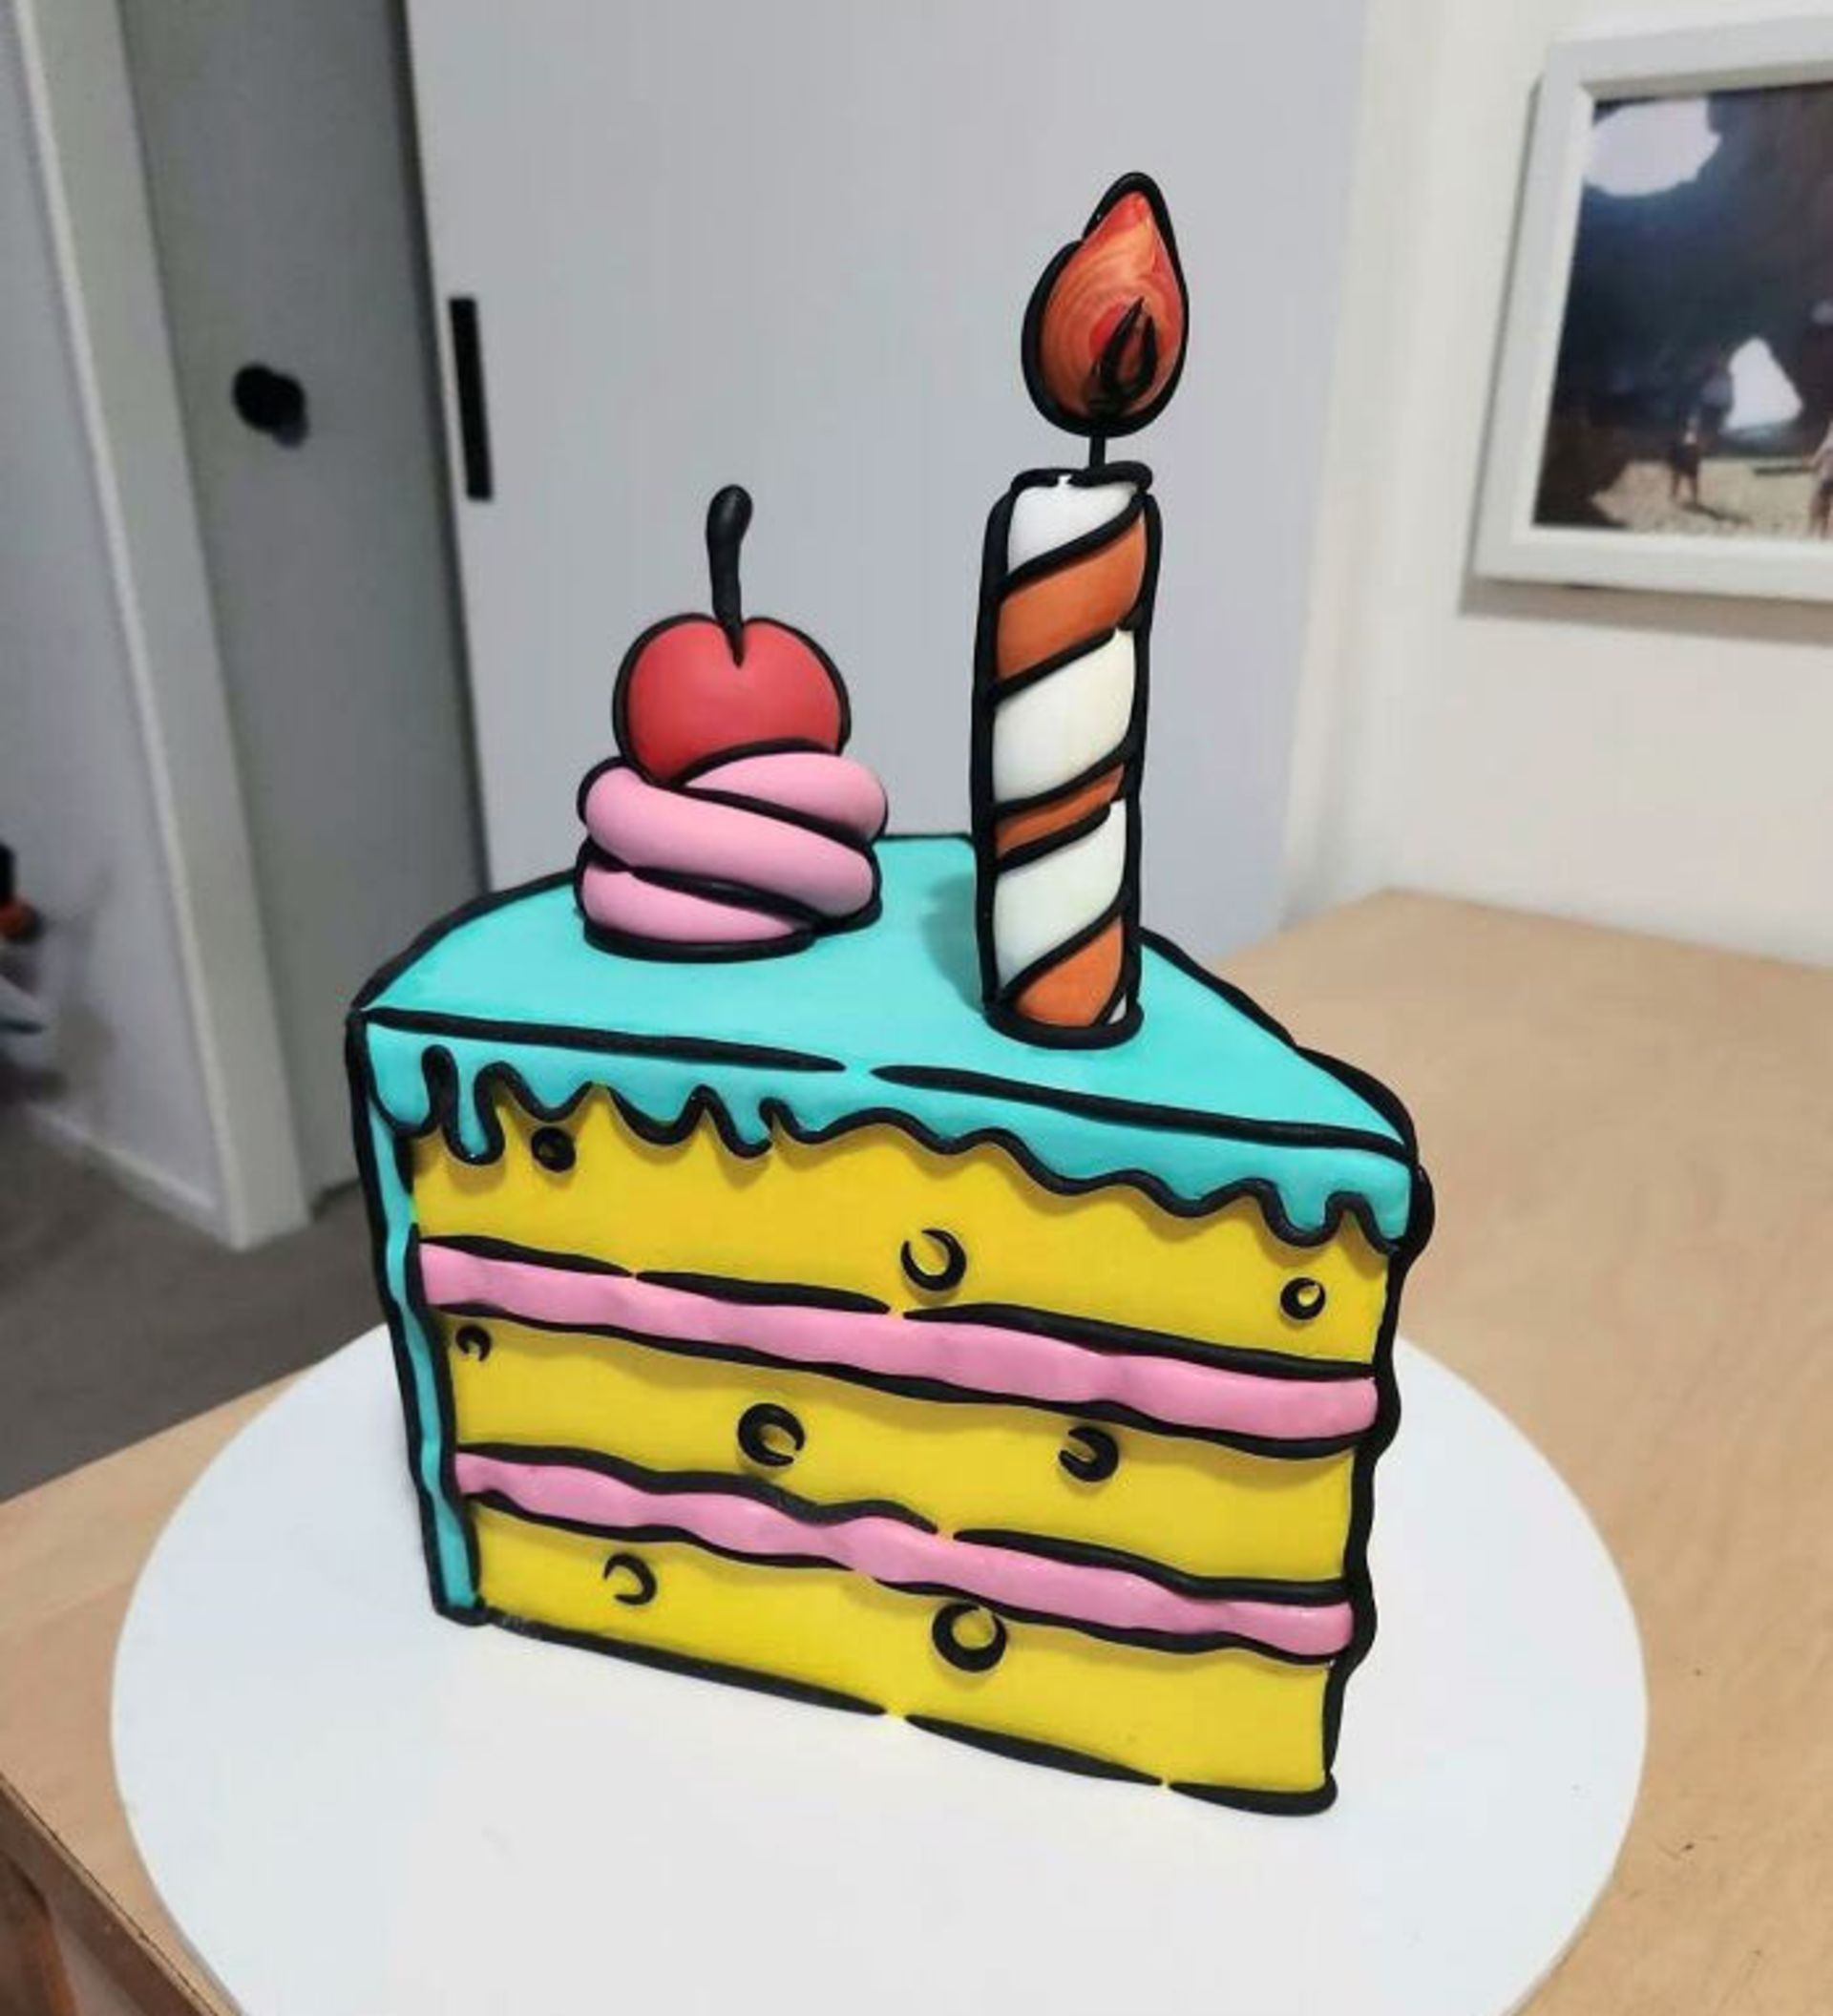 کیک با طراحی انیمیشن دو بعدی